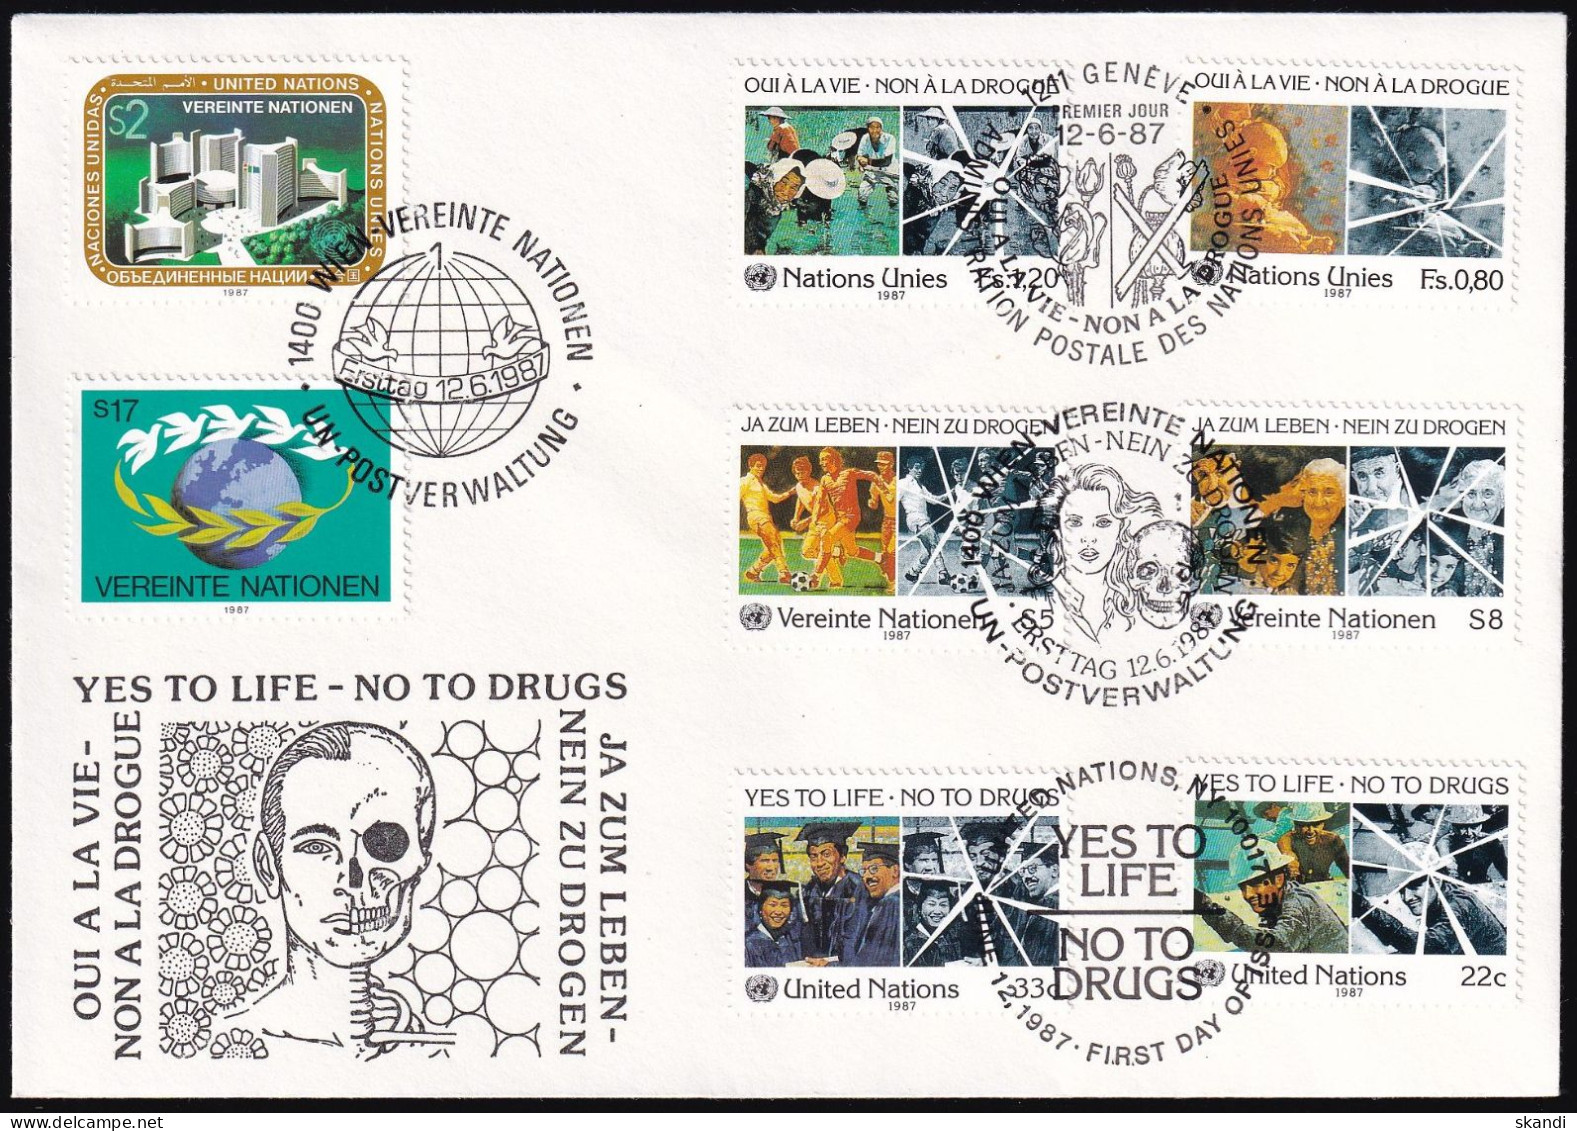 UNO NEW YORK - WIEN - GENF 1987 TRIO-FDC Nein Zu Drogen - Gemeinschaftsausgaben New York/Genf/Wien